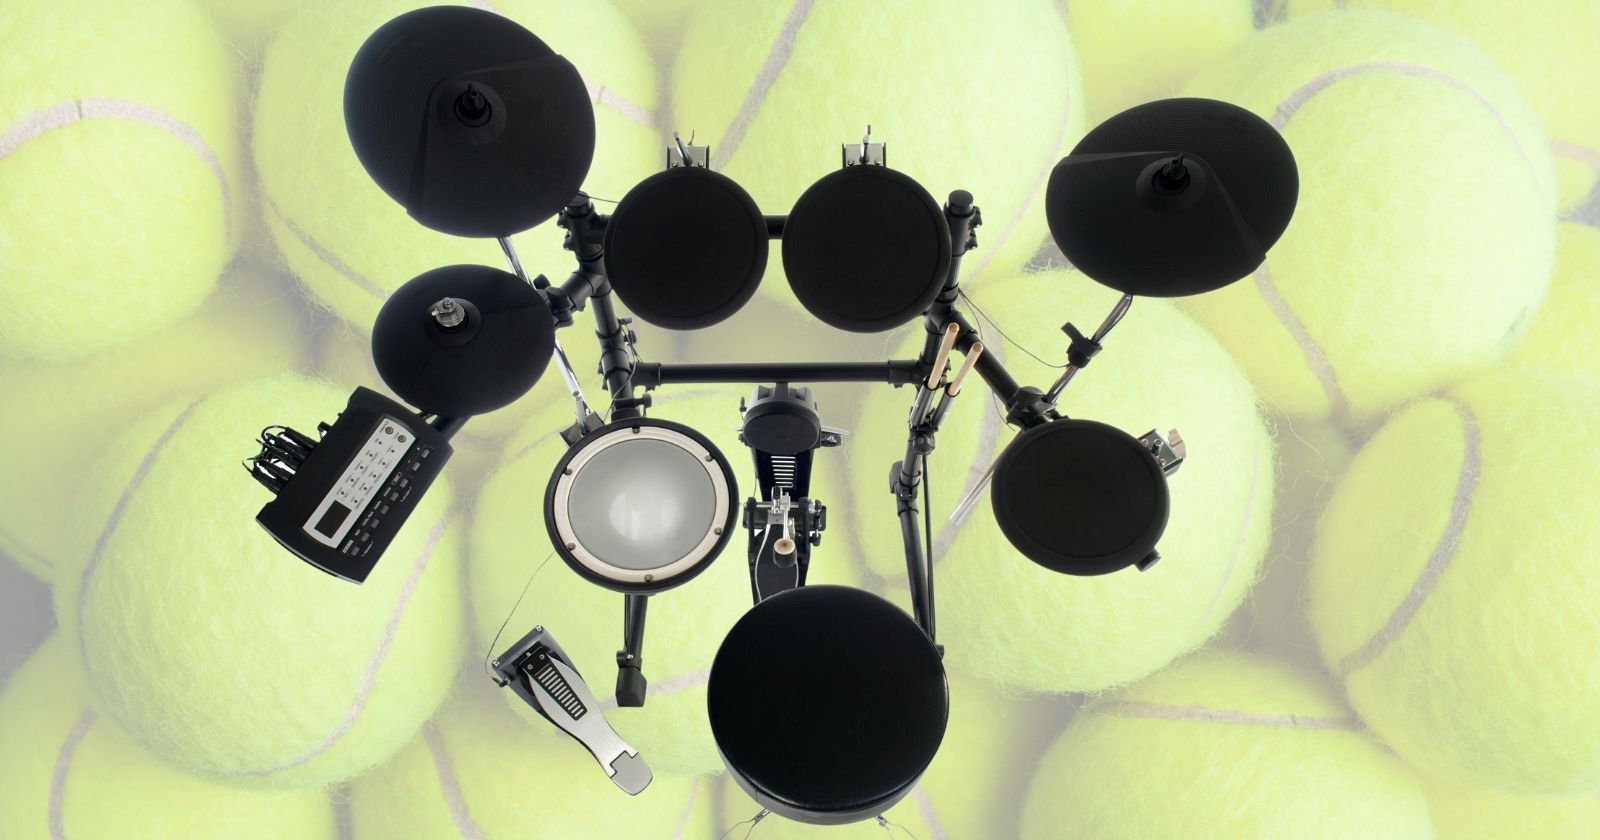 How To Build A Tennis Ball Drum Riser